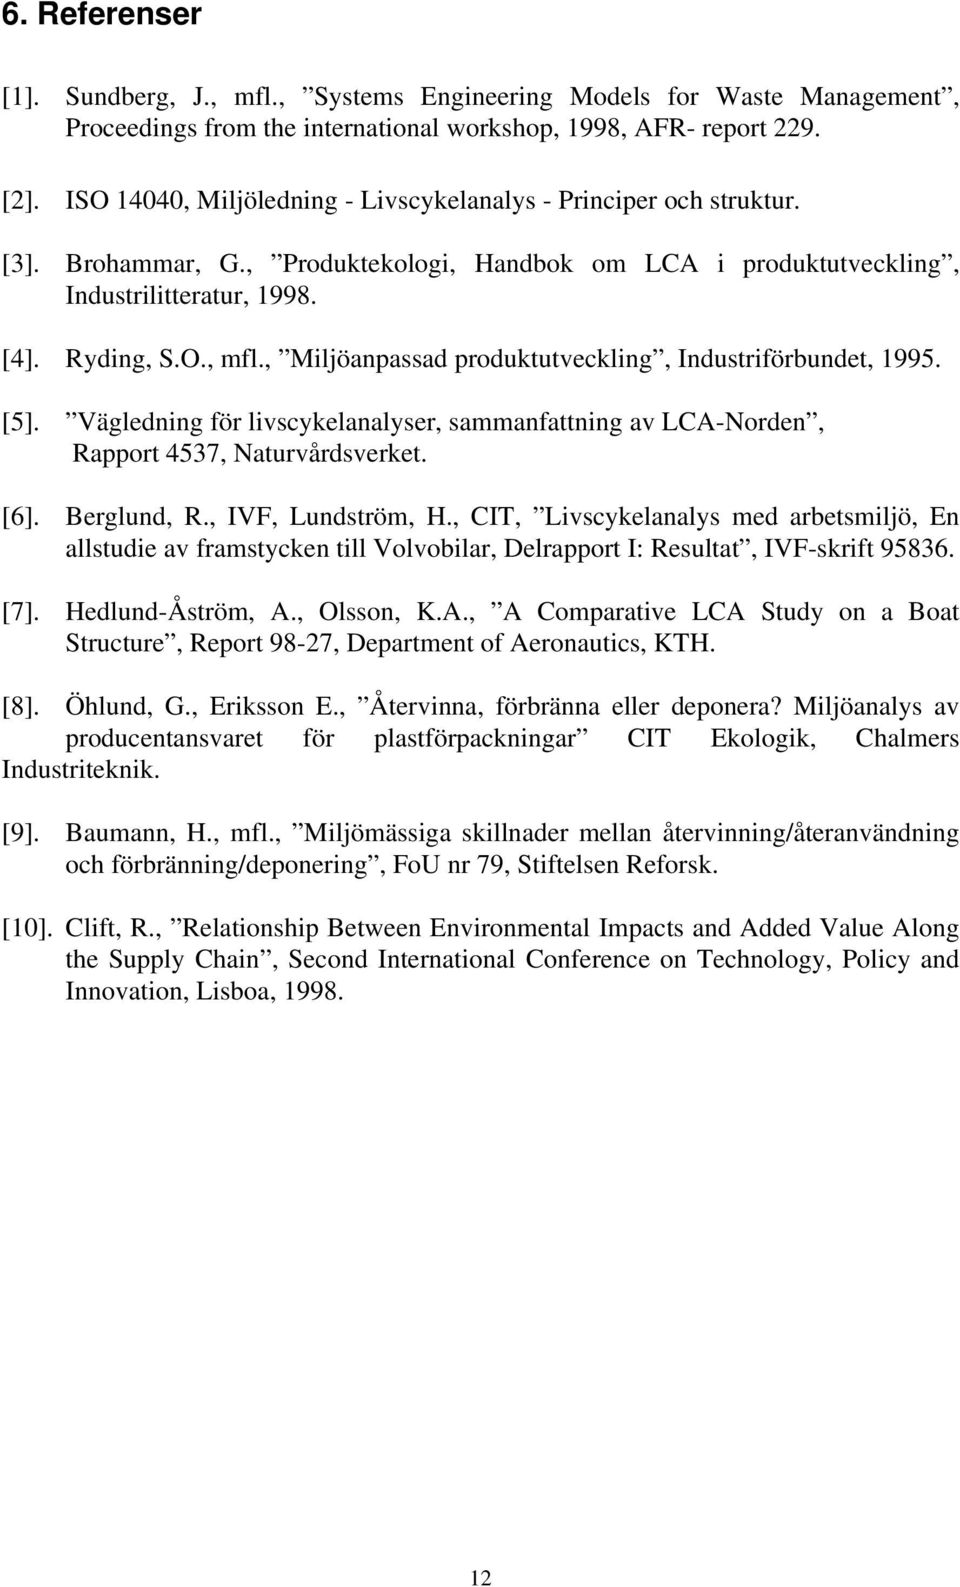 , Miljöanpassad produktutveckling, Industriförbundet, 1995. [5]. Vägledning för livscykelanalyser, sammanfattning av LCA-Norden, Rapport 4537, Naturvårdsverket. [6]. Berglund, R., IVF, Lundström, H.